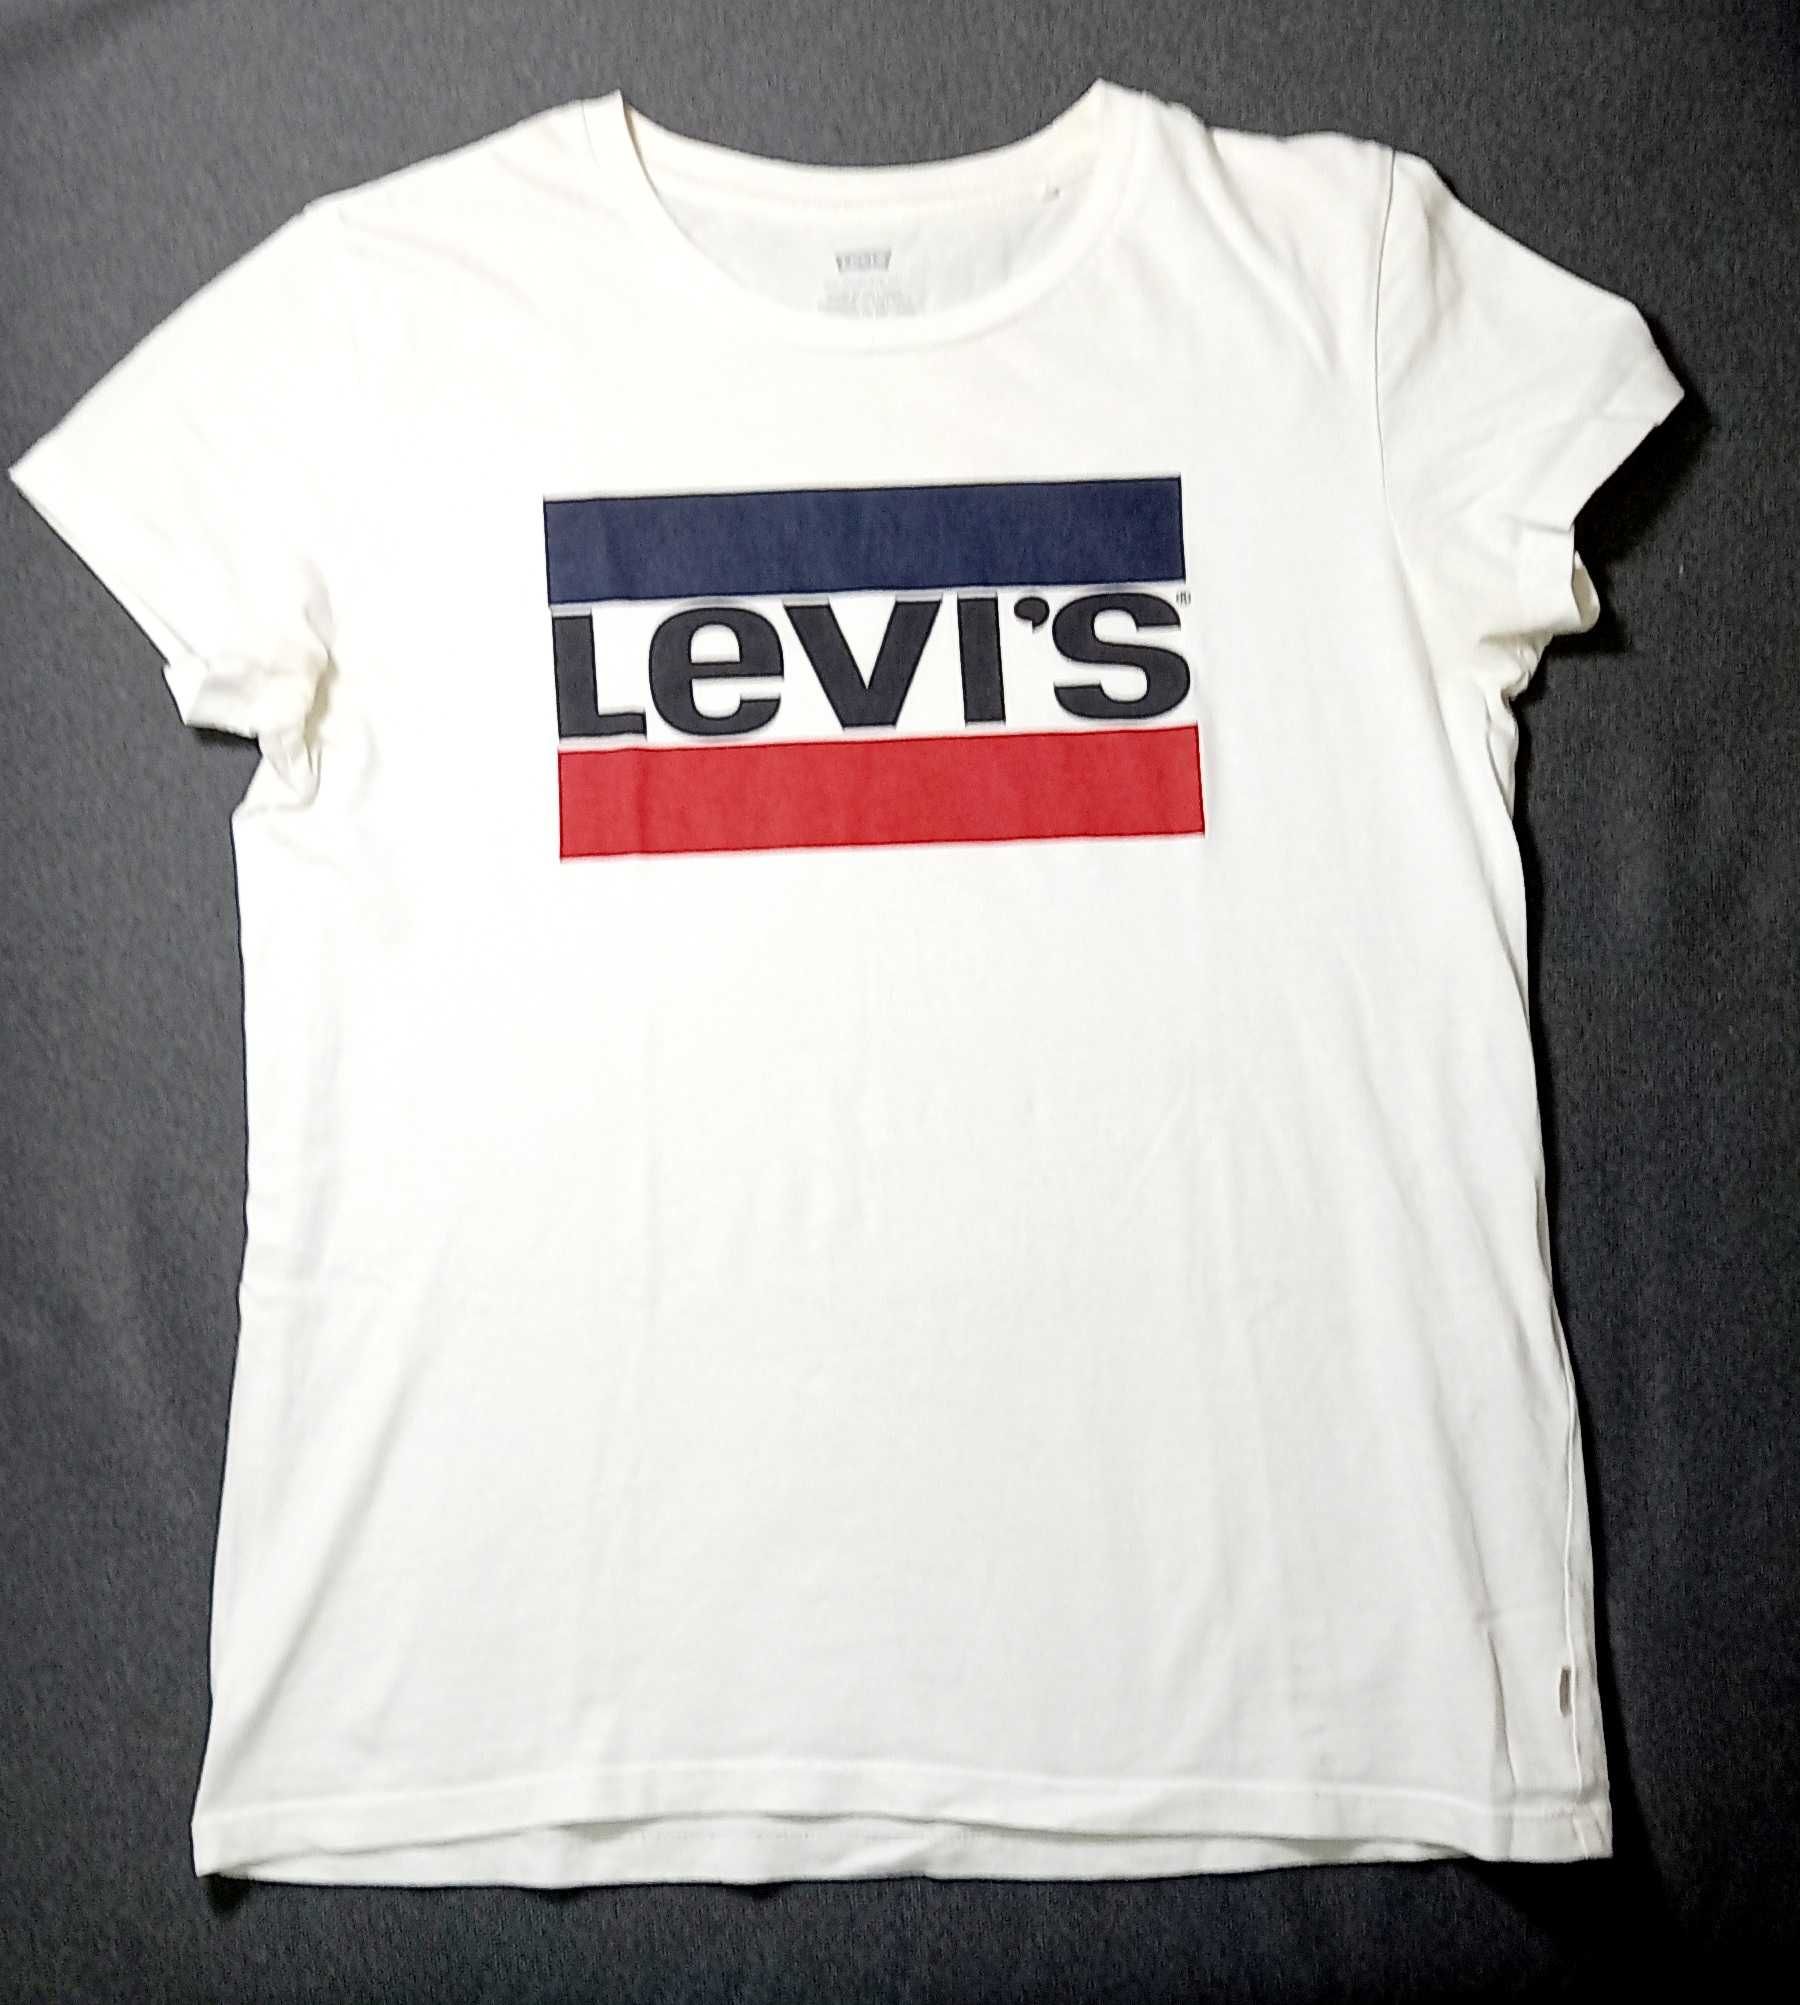 LEVI'S rozm. S/M (36/38) nowy biały damski t-shirt z logo